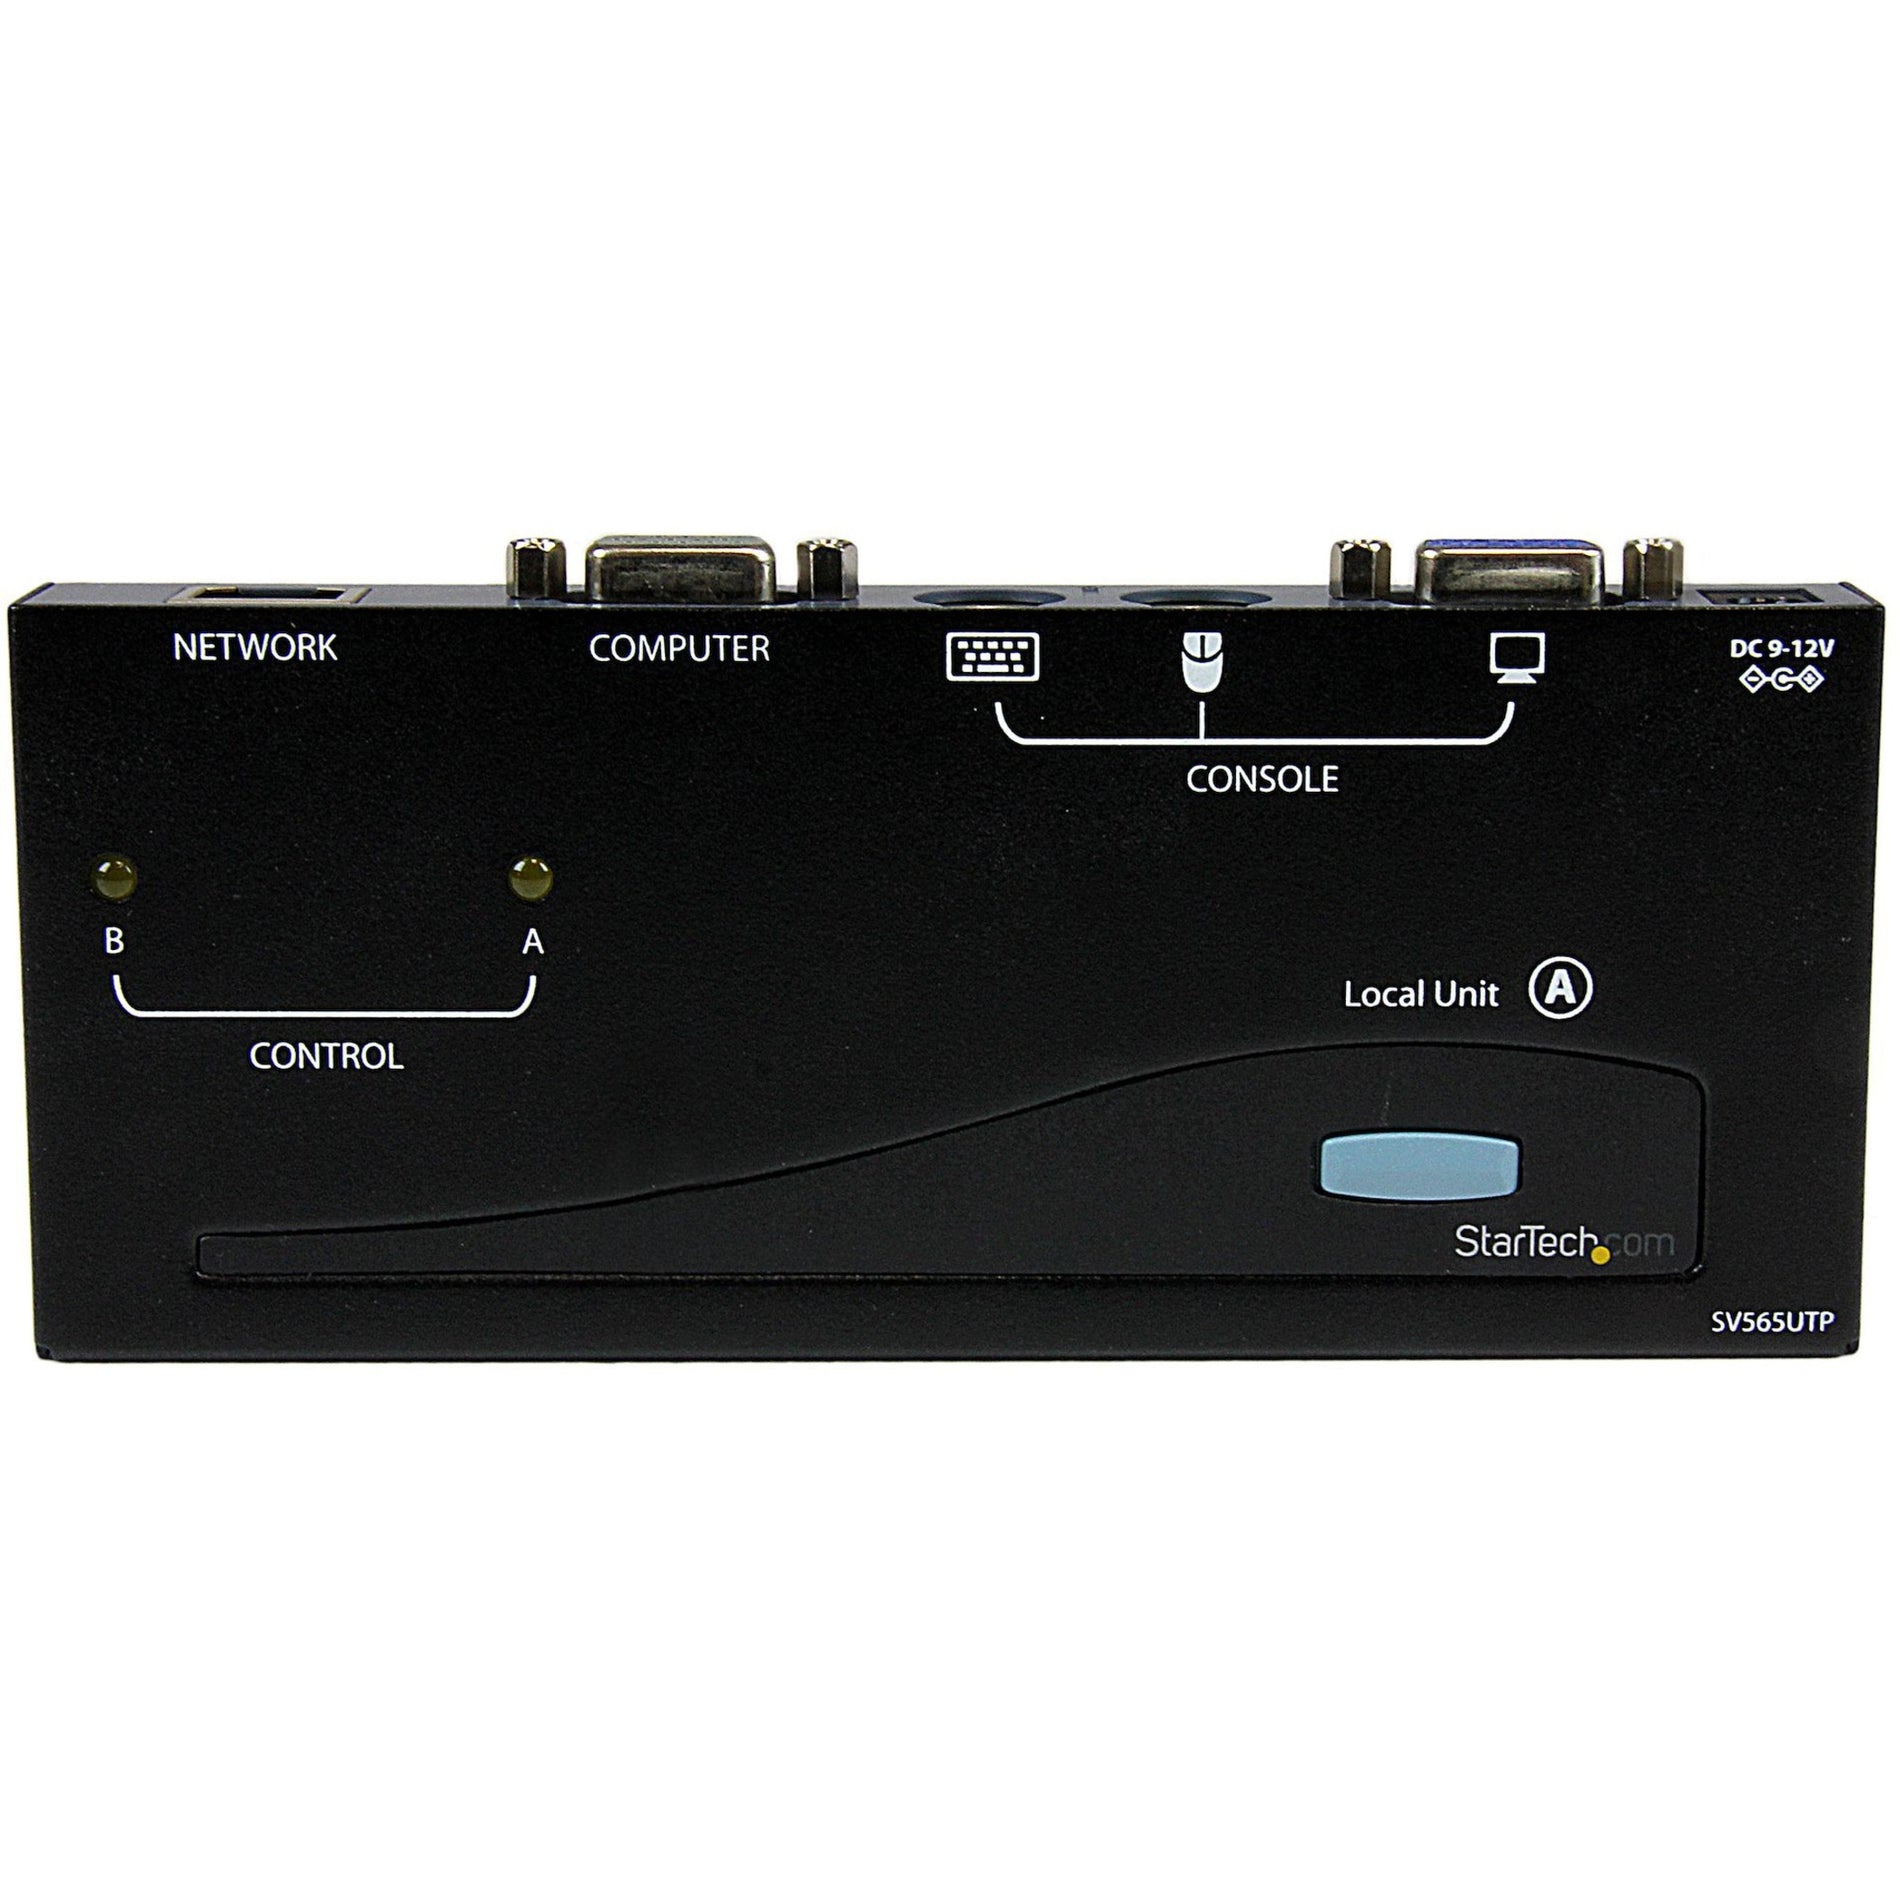 星美科技 SV565UTP PS/2 USB KVM 控制台扩展器，VGA，1024 x 768，2年保修，TAA 符合标准，500英尺（150米）已停产